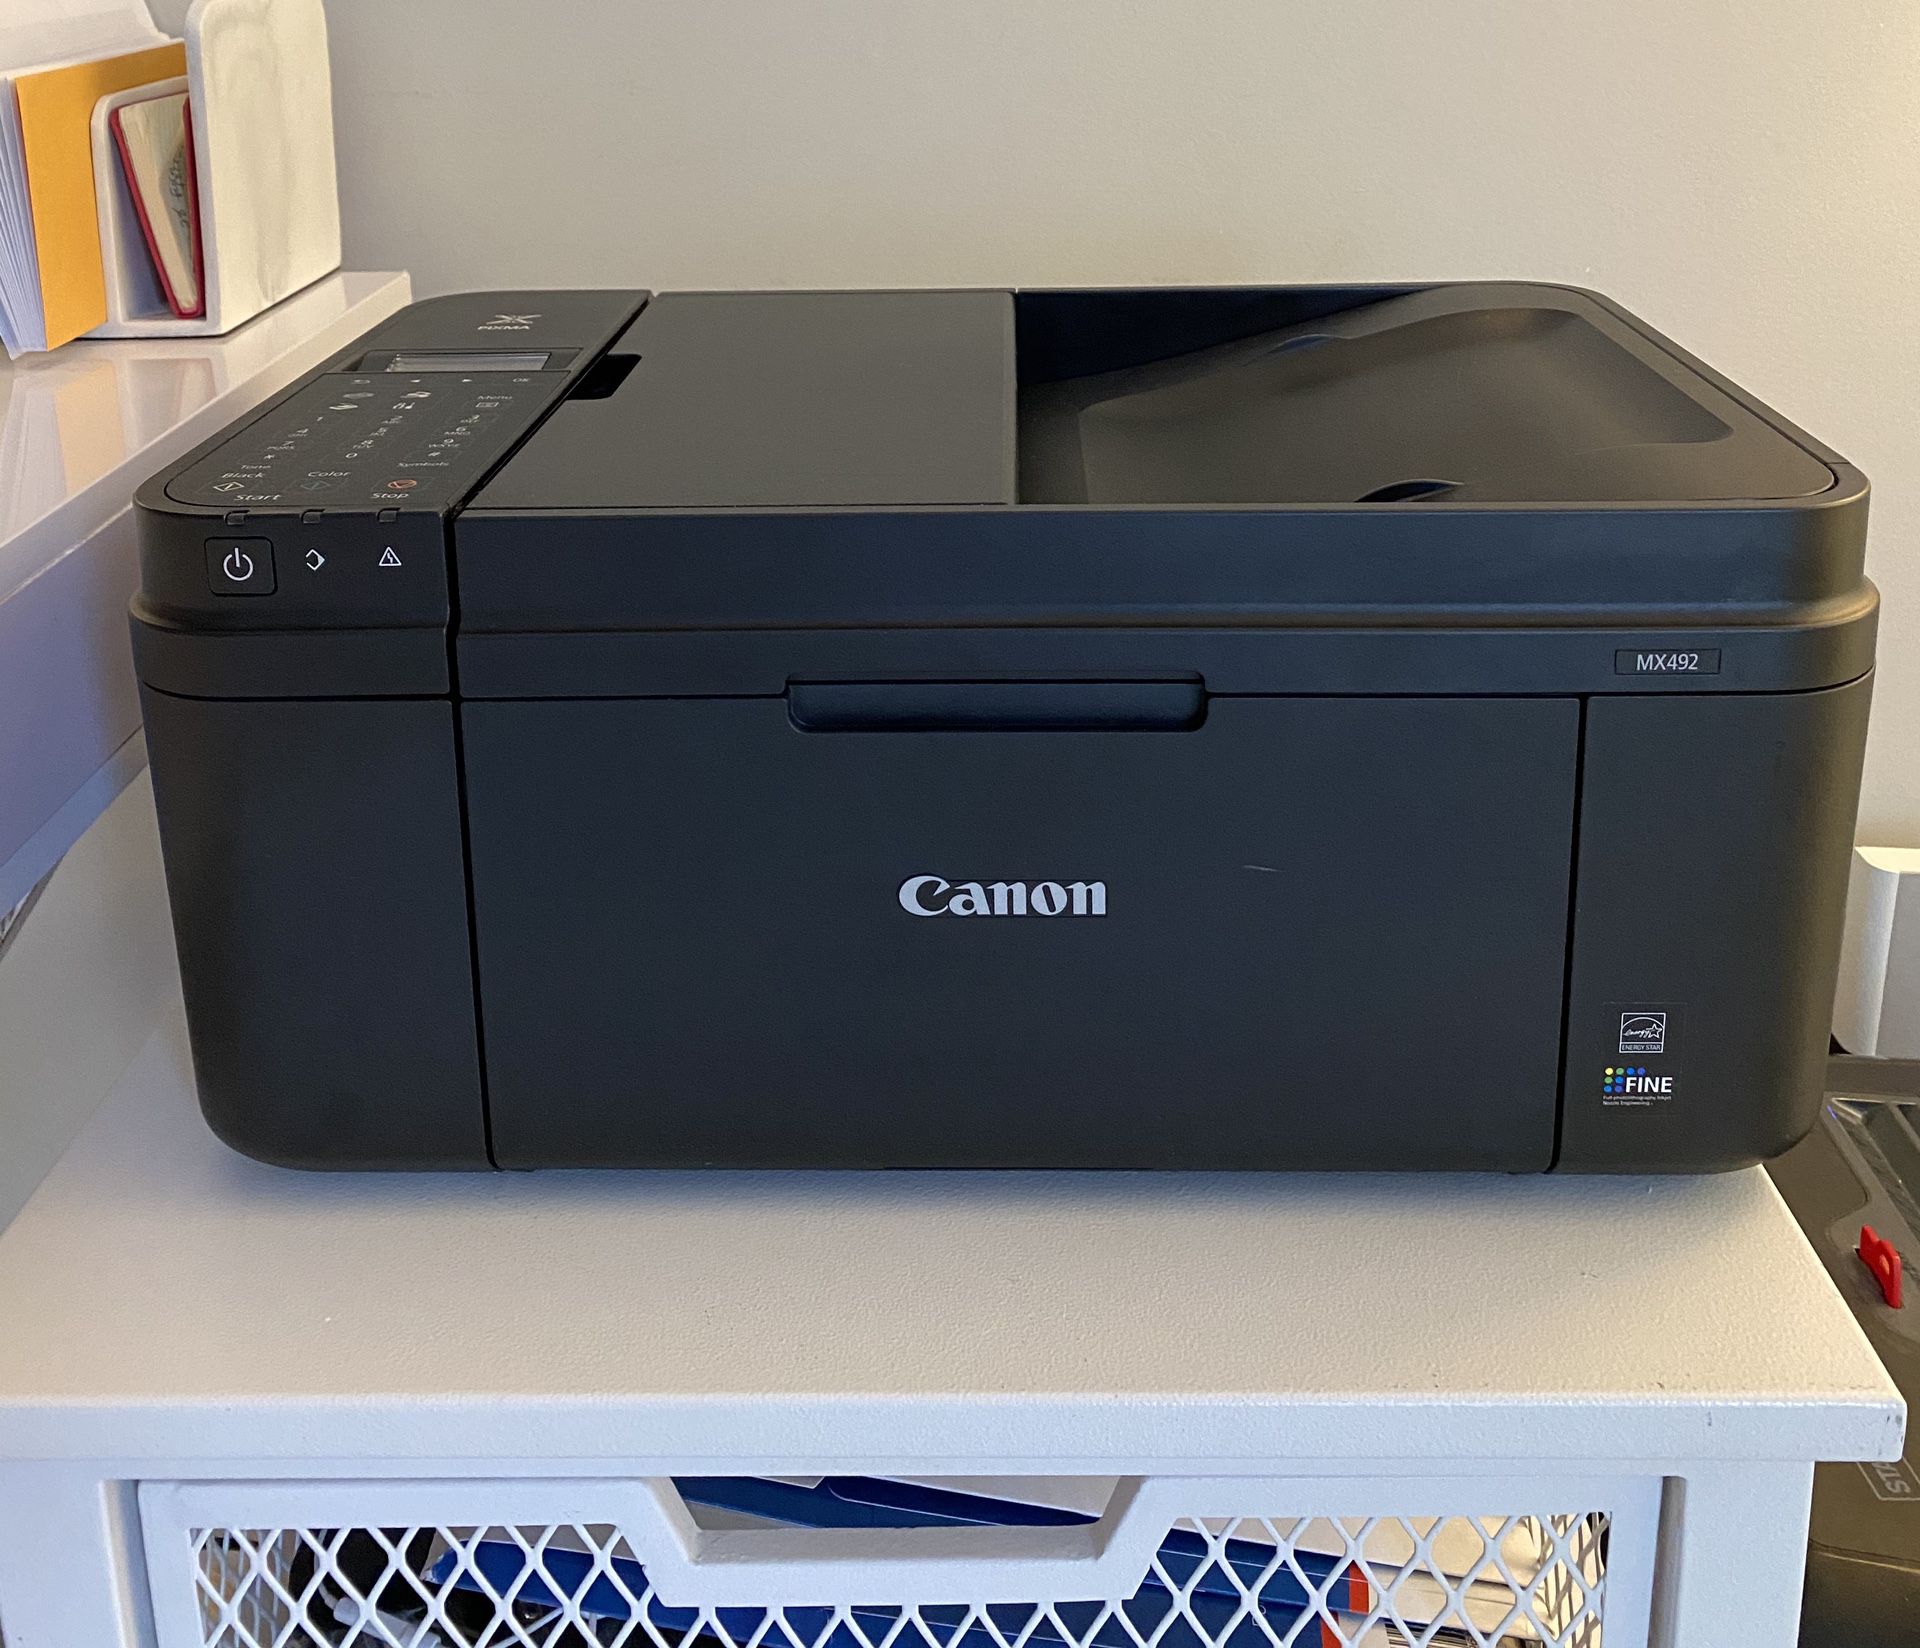 Canon Wireless All in One Color Printer